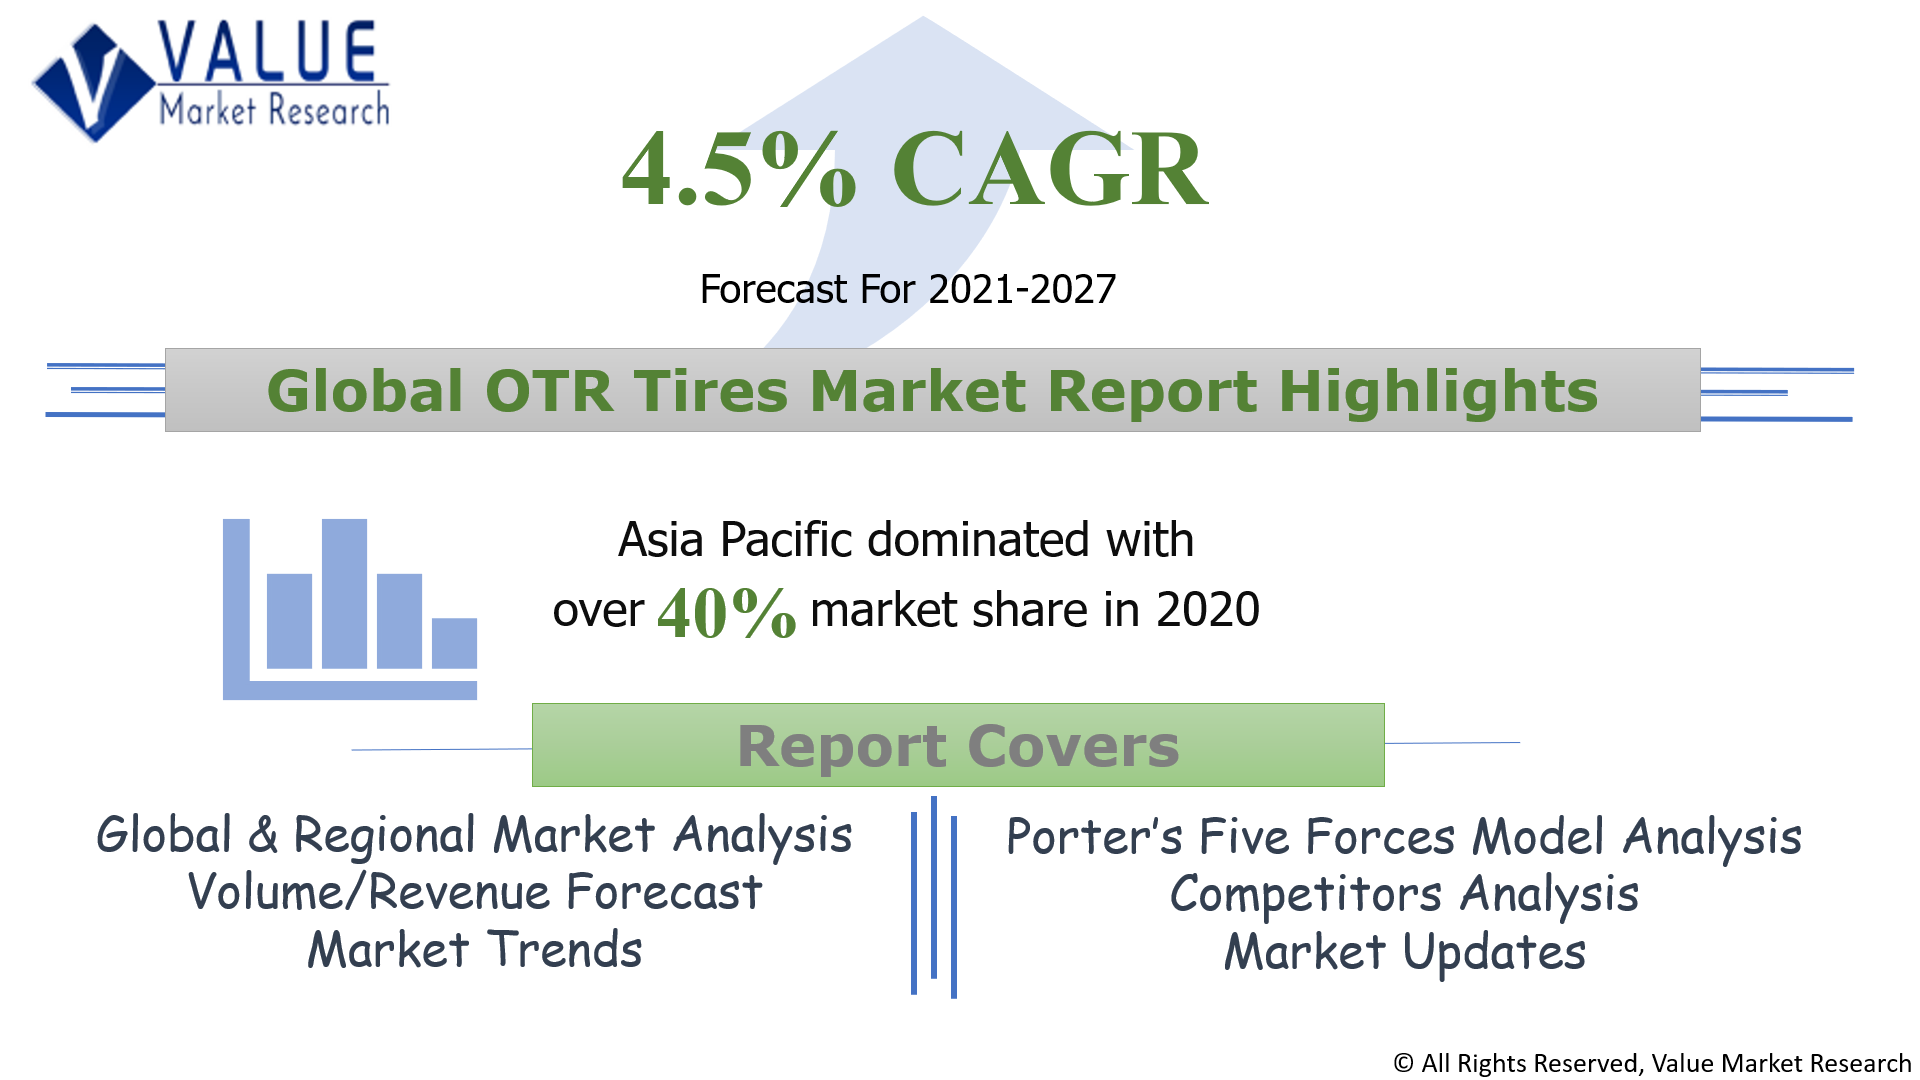 Global OTR Tires Market Share